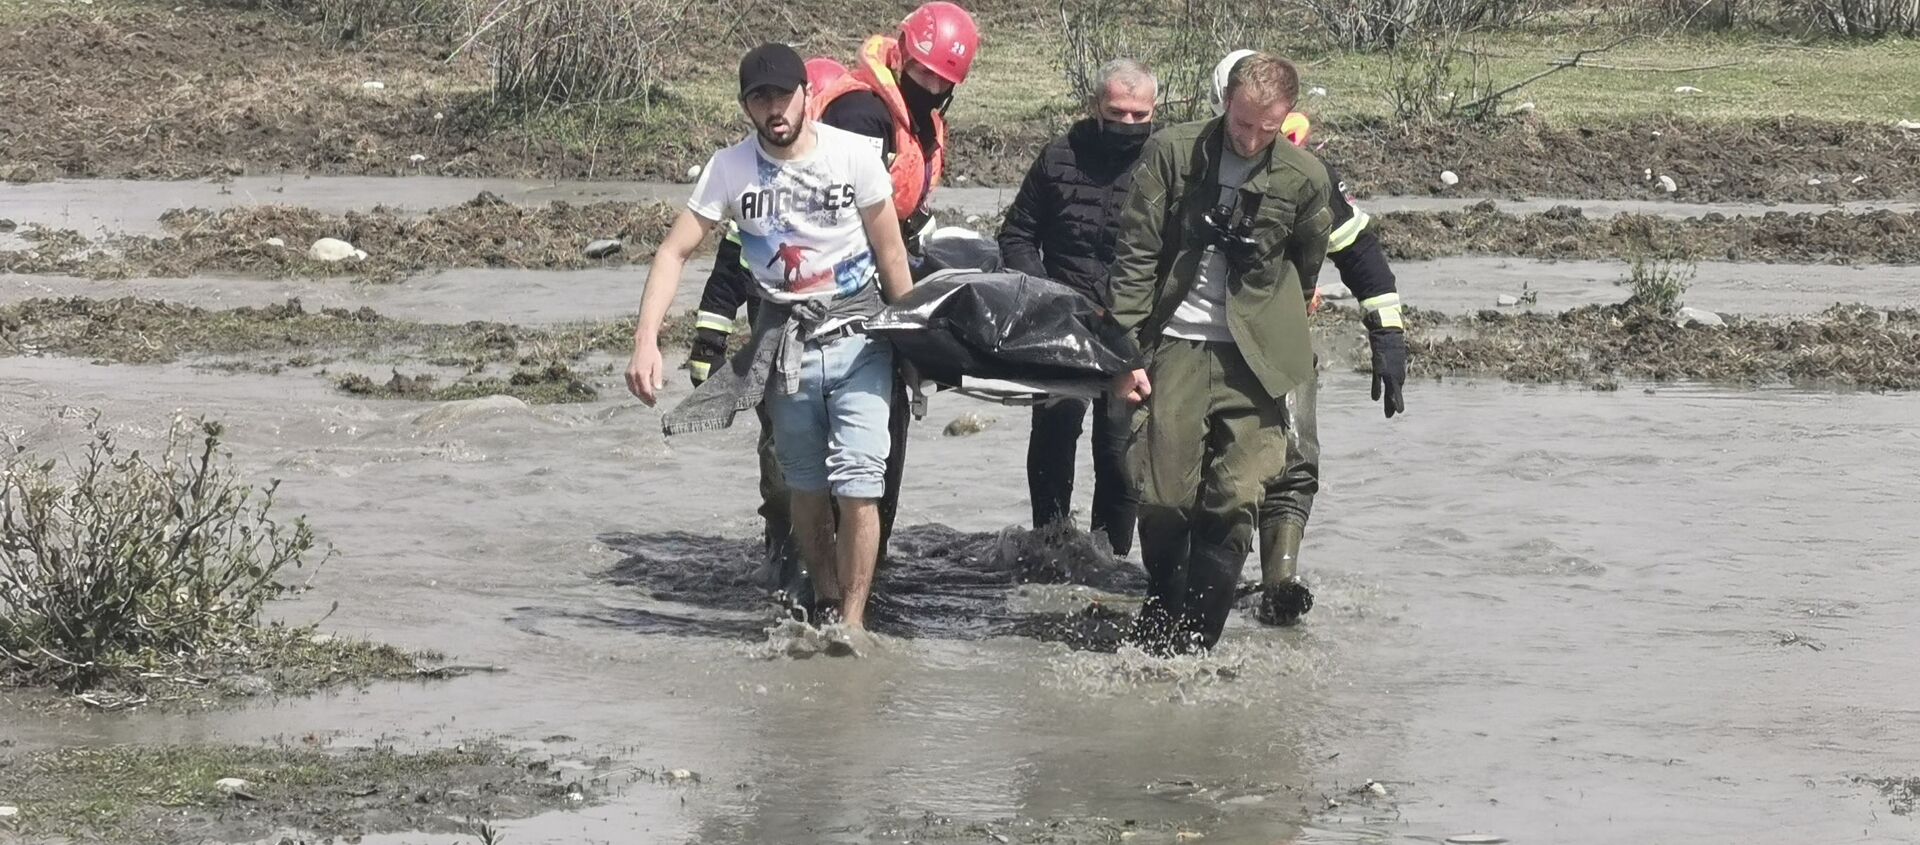 Спасательно-поисковая операция на реке Ингури близ села Шамгона Зугдидского района - Sputnik Грузия, 1920, 07.04.2021